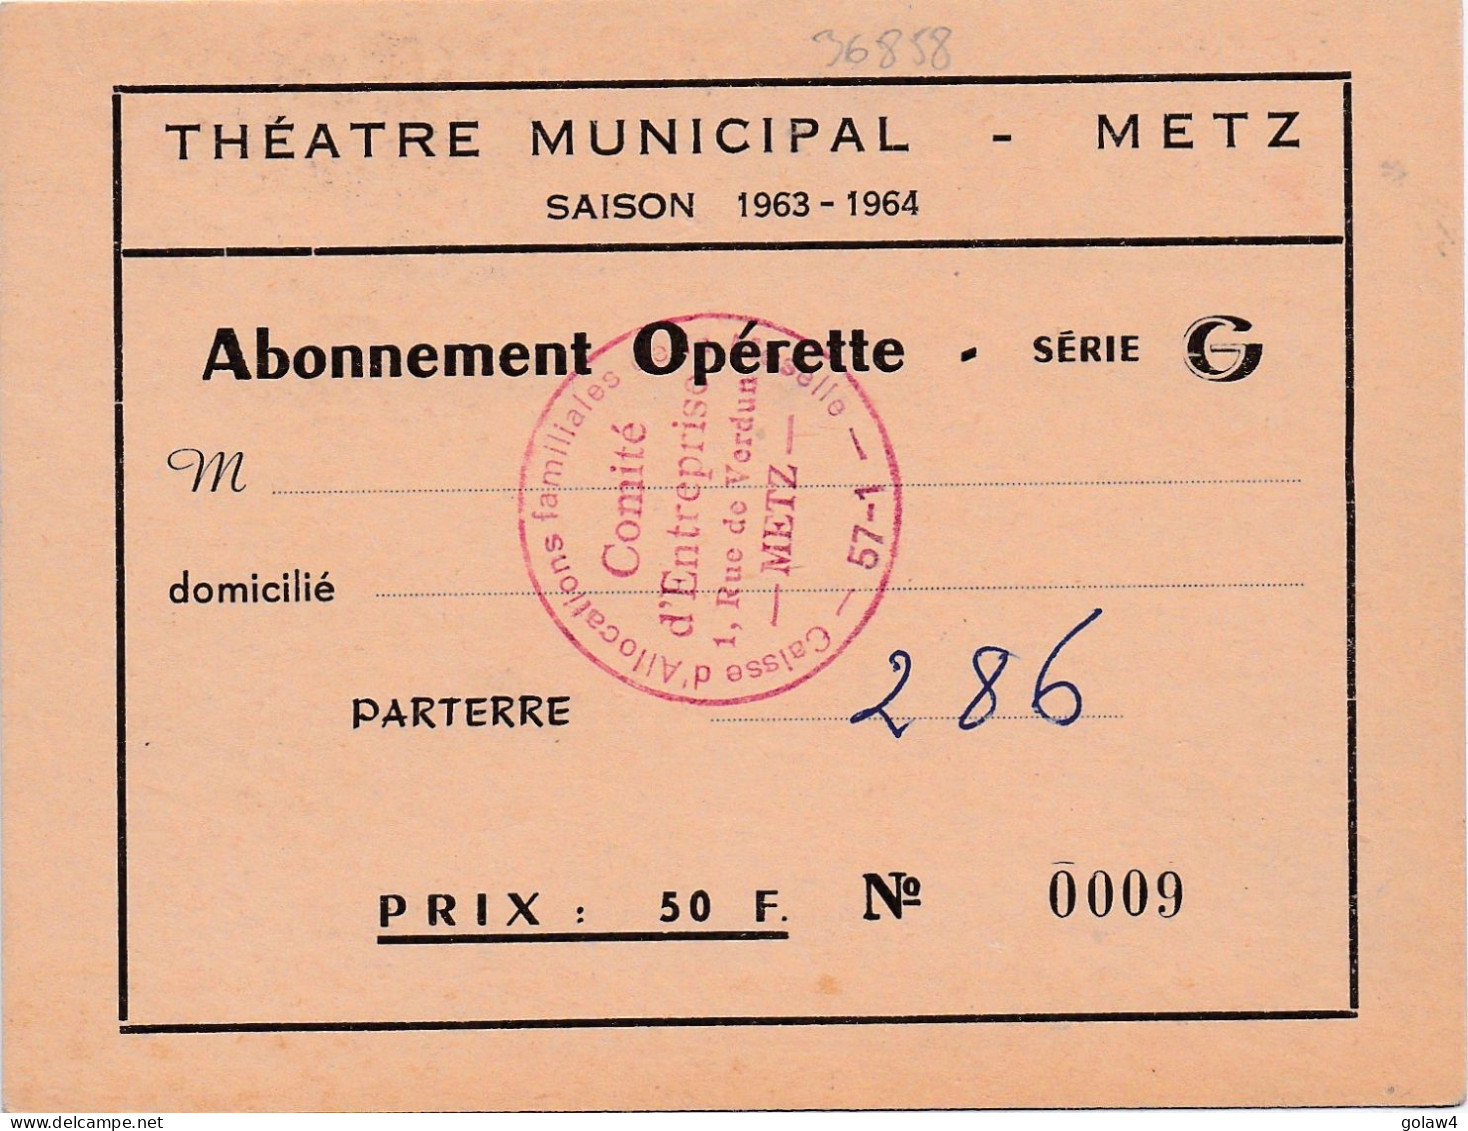 36858 THEATRE MUNICIPAL METZ SAISON 1963 1964 ABONNEMENT OPERETTE SERIE PARTERRE CAISSE ALLOCATIONS FAMILIALLES MOSELLE - Tickets D'entrée